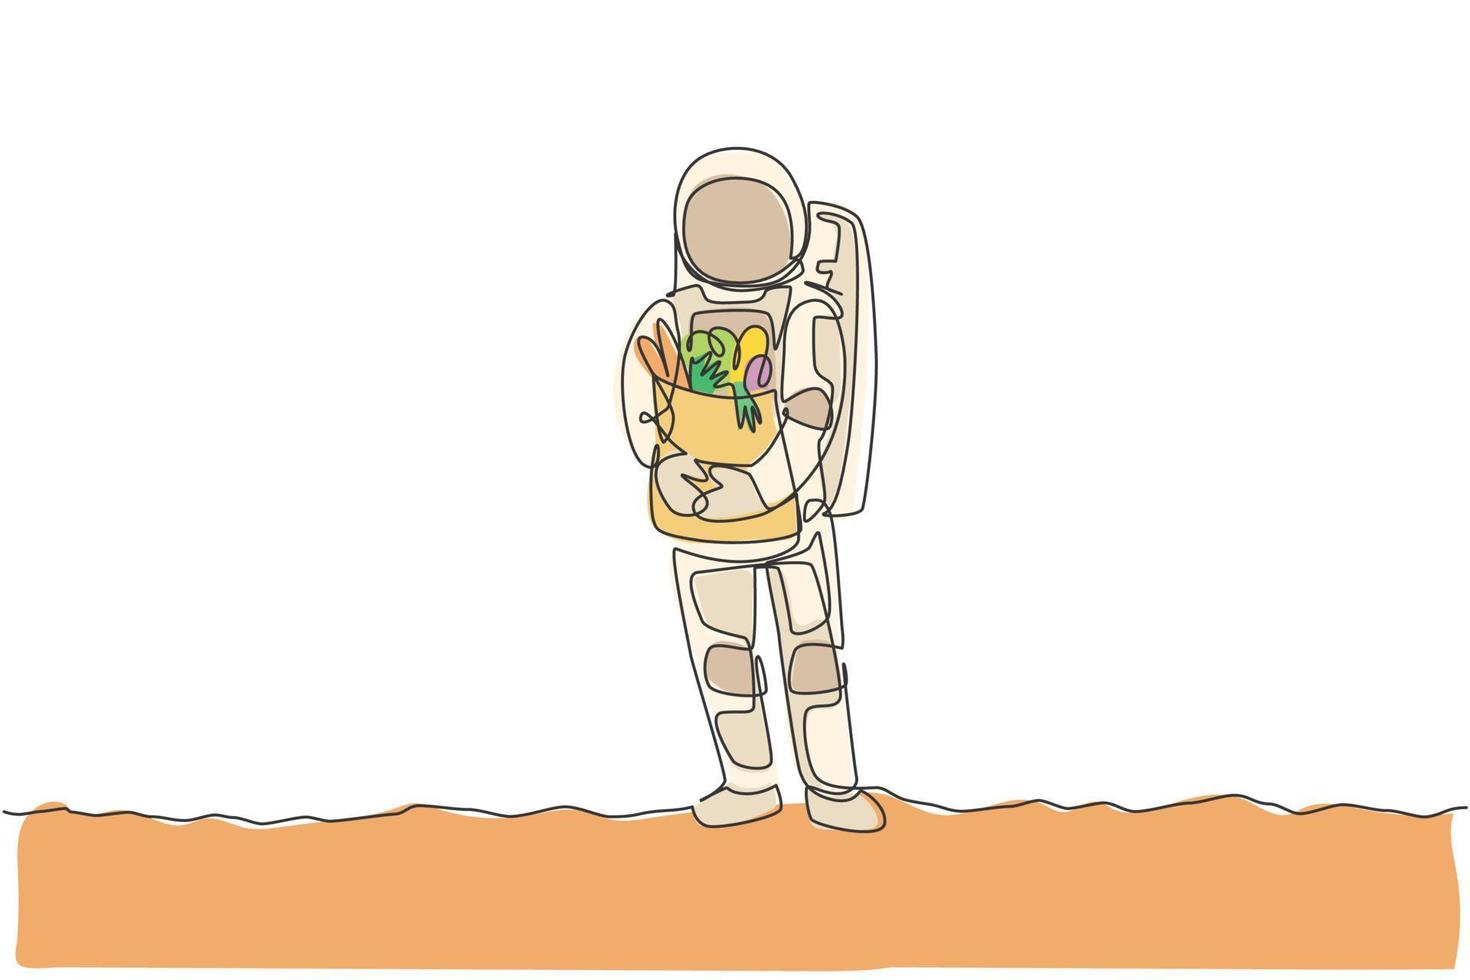 un singolo disegno a tratteggio dell'astronauta porta un sacchetto di carta pieno di generi alimentari sul petto nella superficie della luna nell'illustrazione vettoriale della superficie della luna. concetto di agricoltura dello spazio esterno. design moderno a linea continua